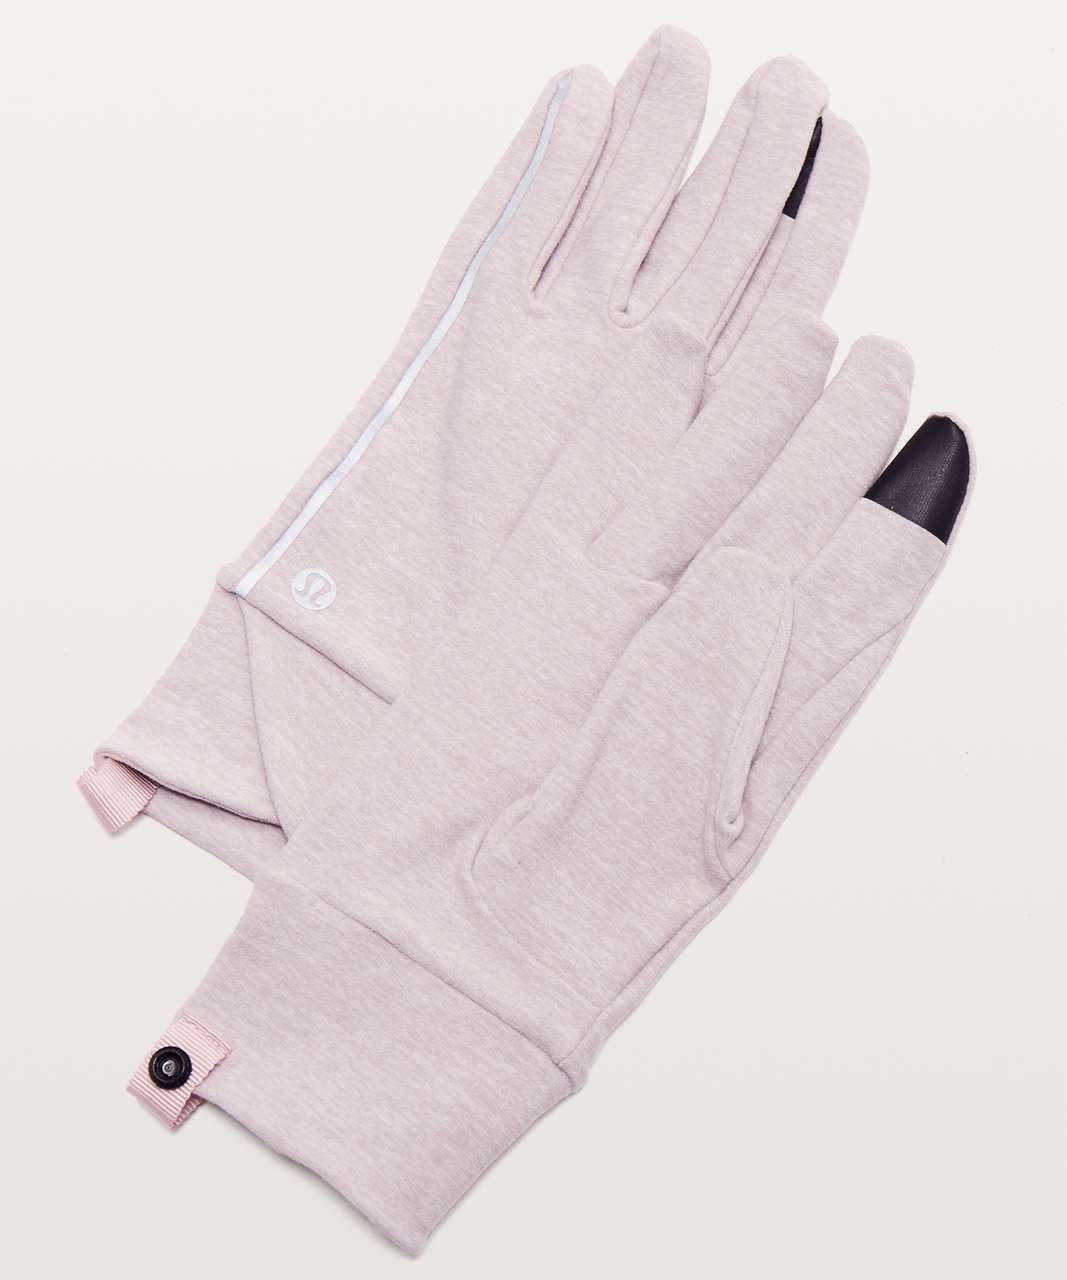 lululemon winter gloves